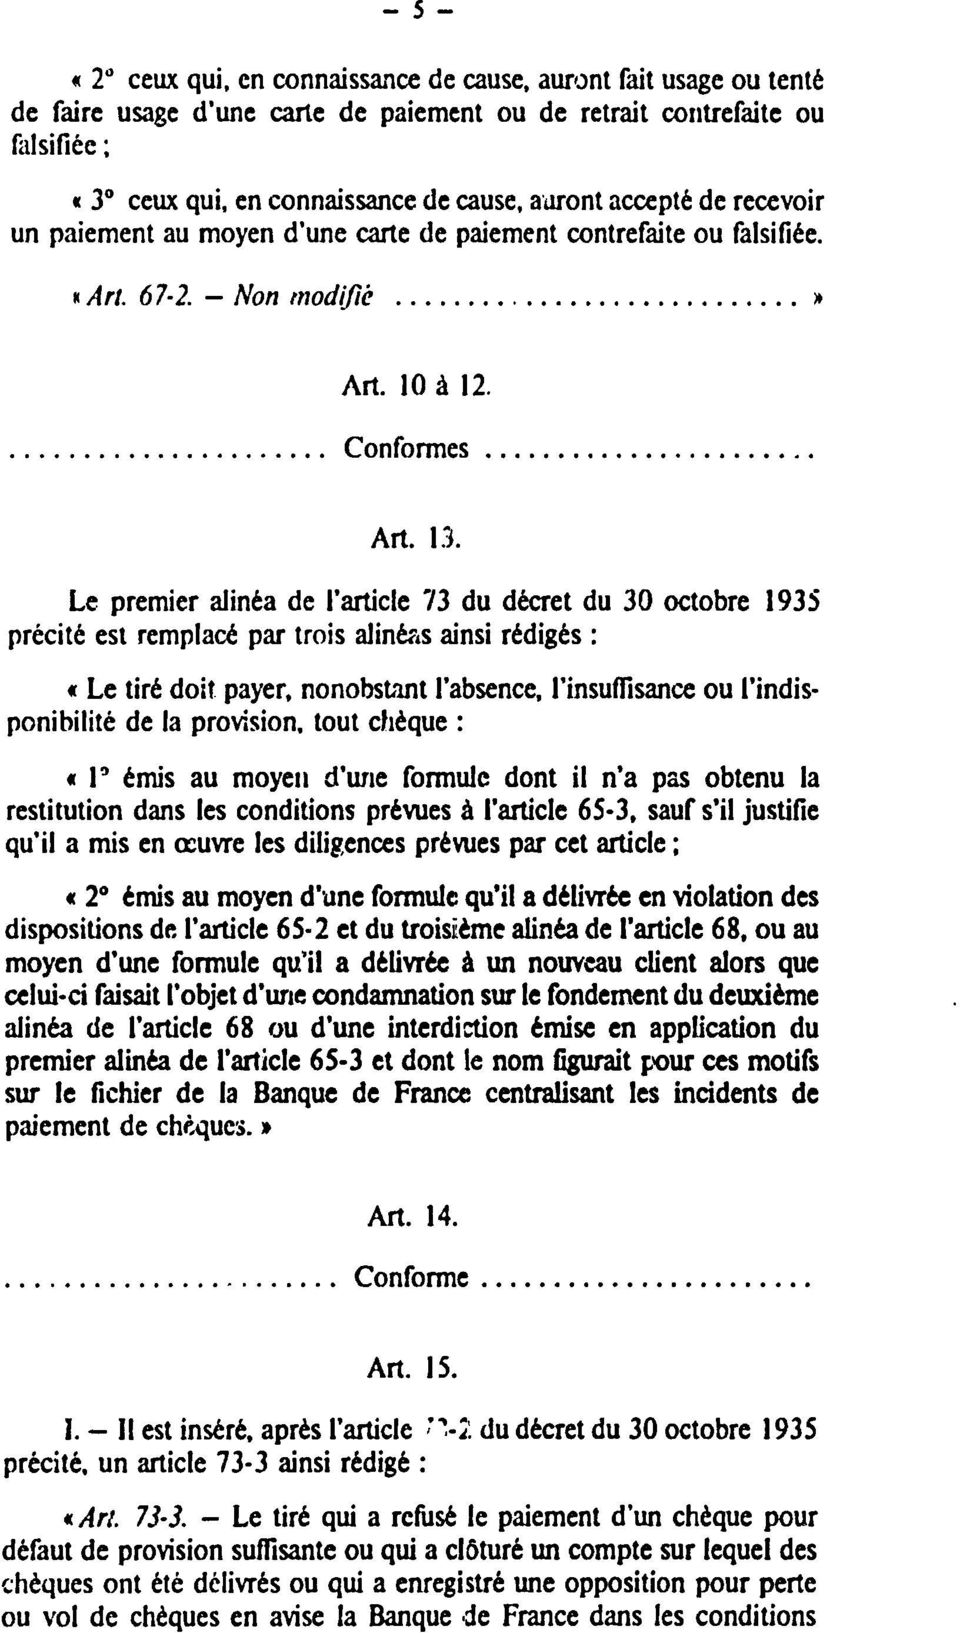 Le premier alinéa de l'article 73 du décret du 30 octobre 1935 précité est remplacé par trois alinéas ainsi rédigés : «Le tiré doit payer, nonobstant l'absence, l'insuffisance ou l'indisponibilité de